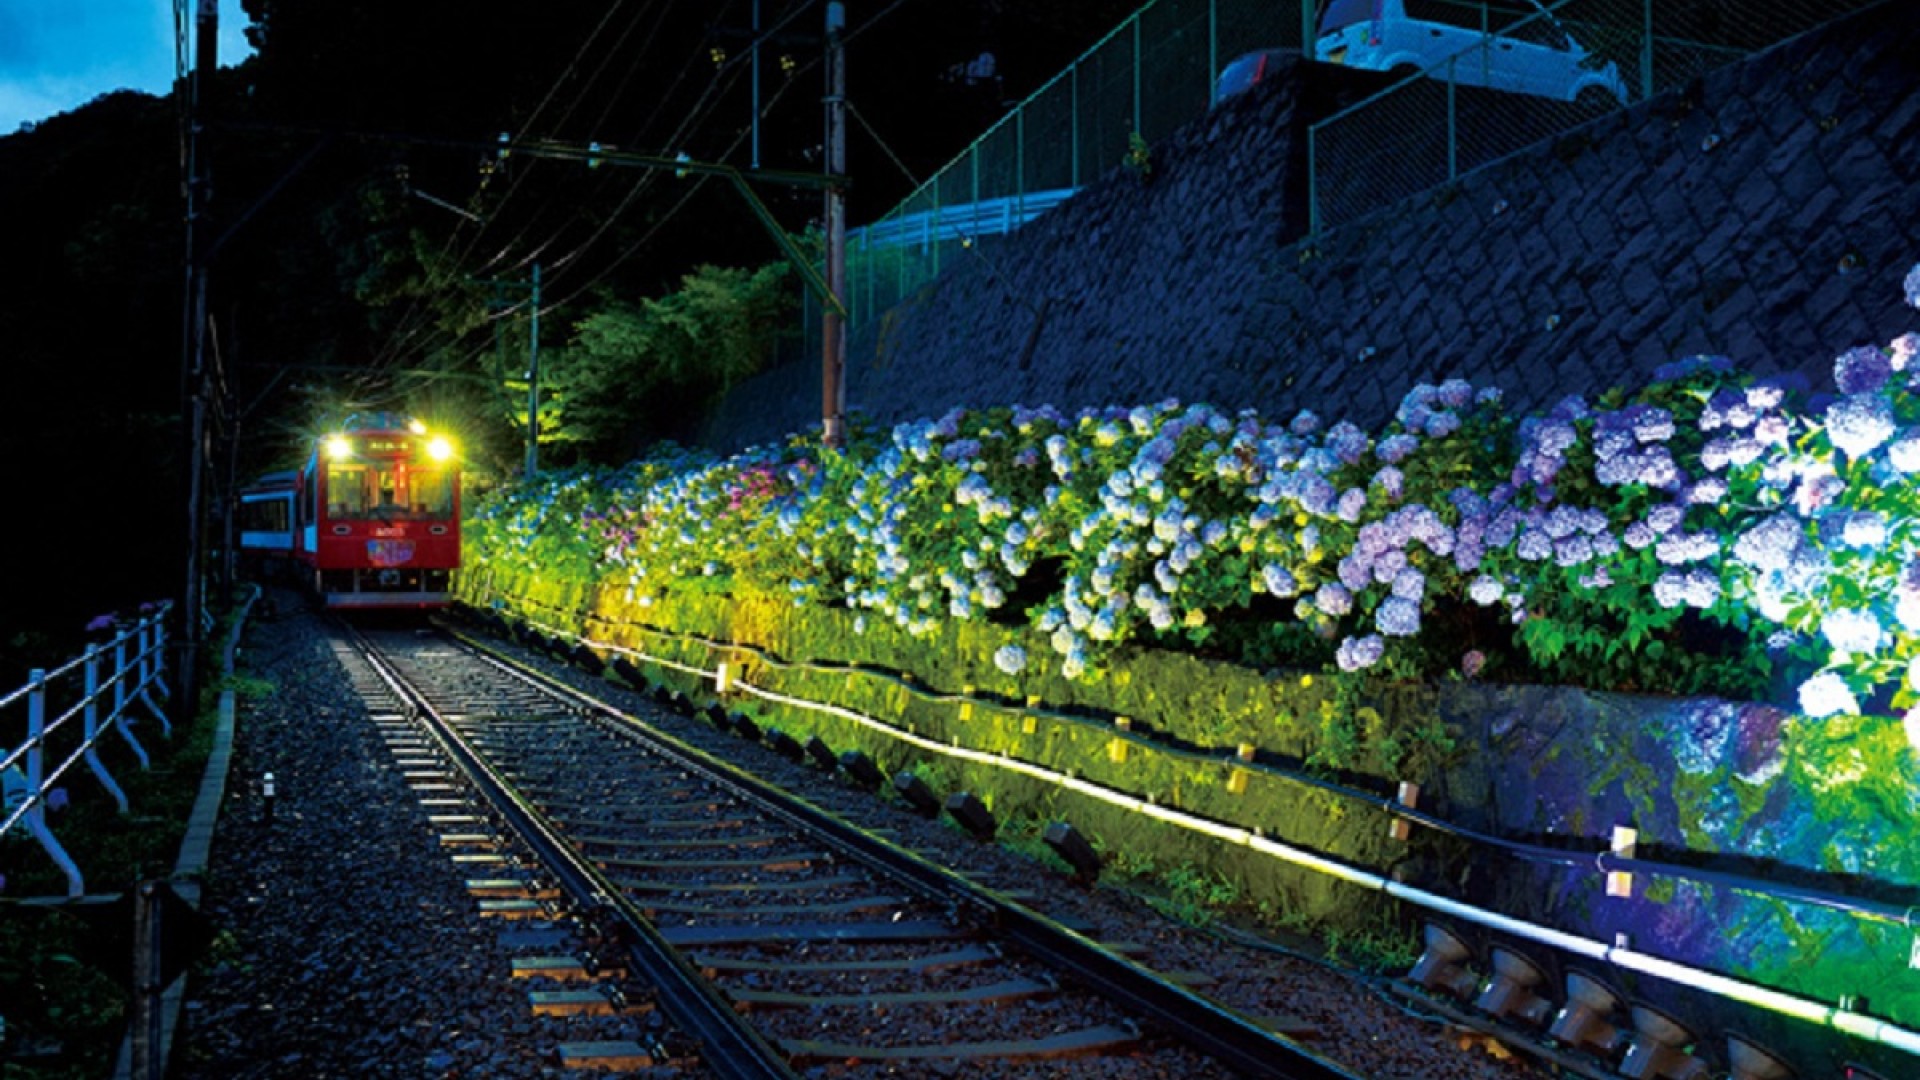 Le Train des hortensias